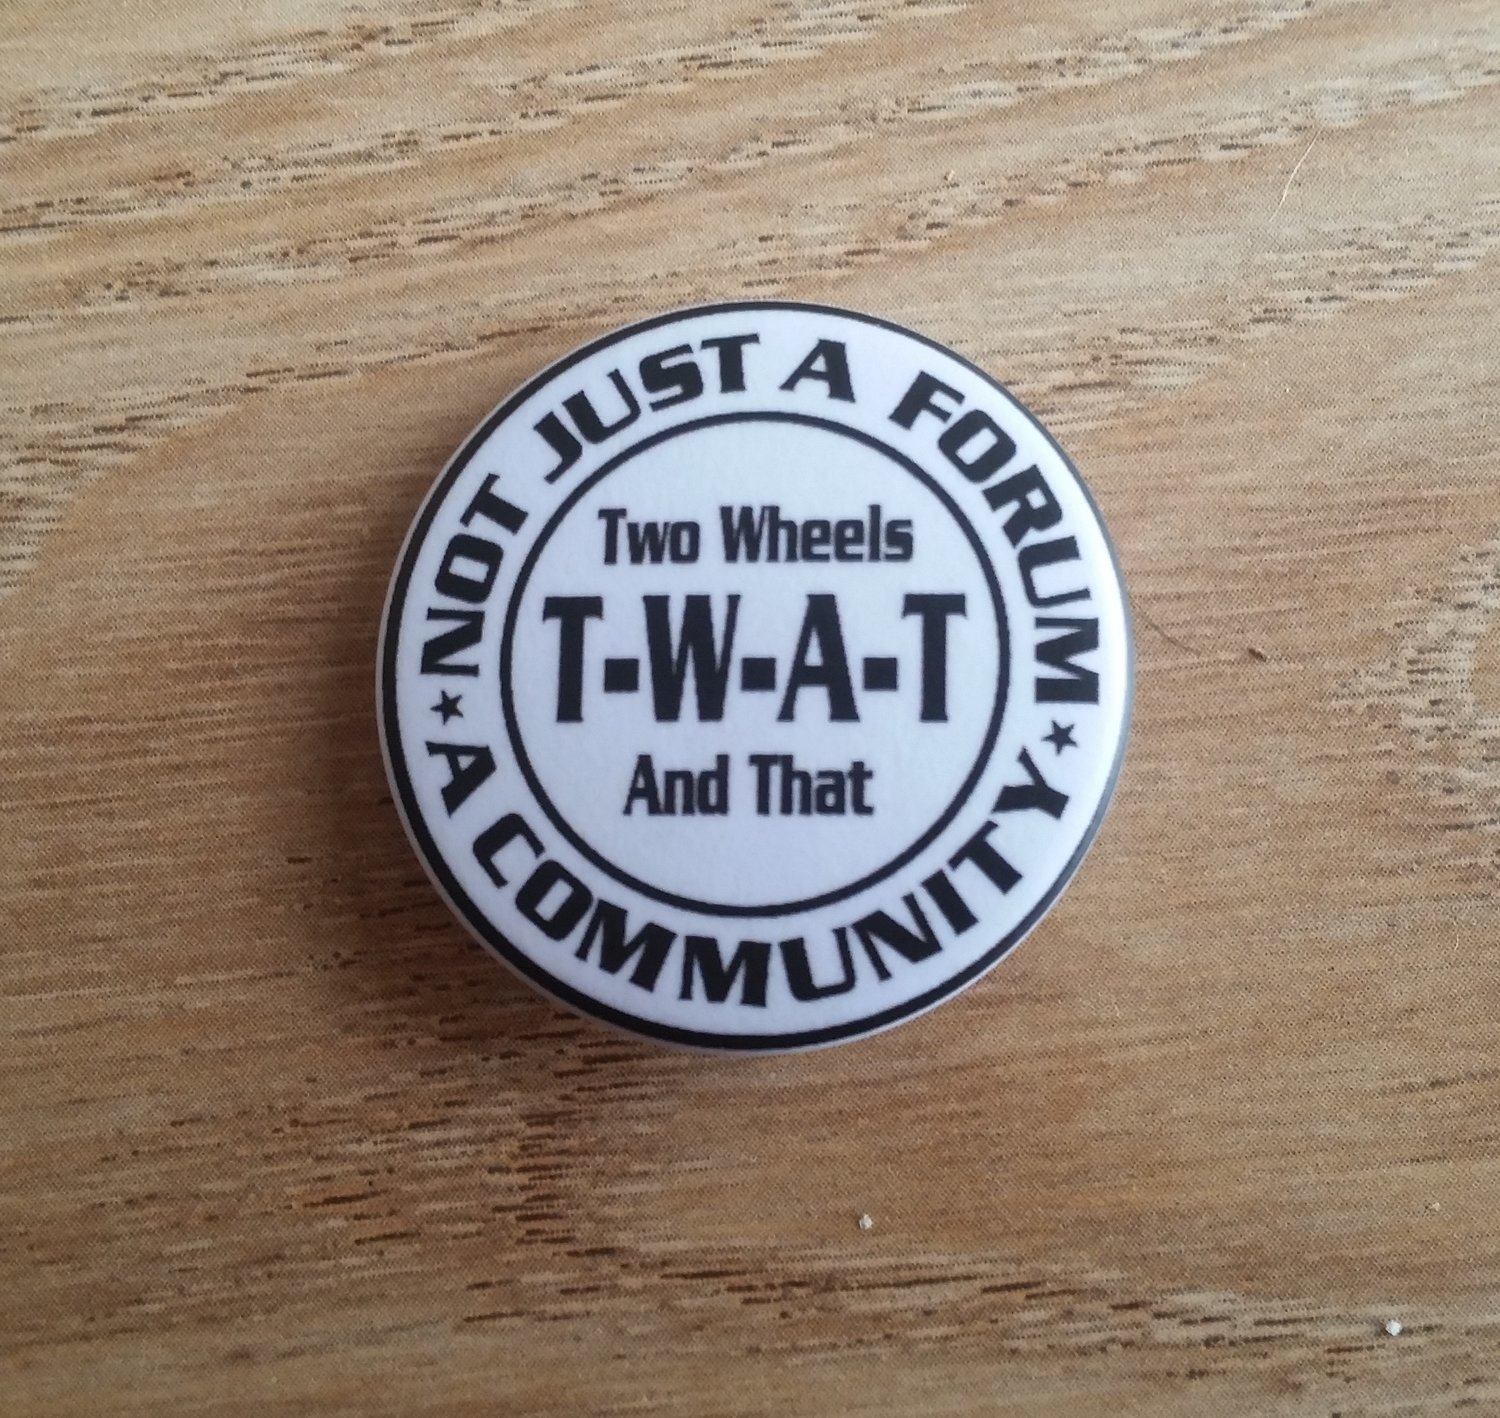 T-W-A-T Lapel Badge